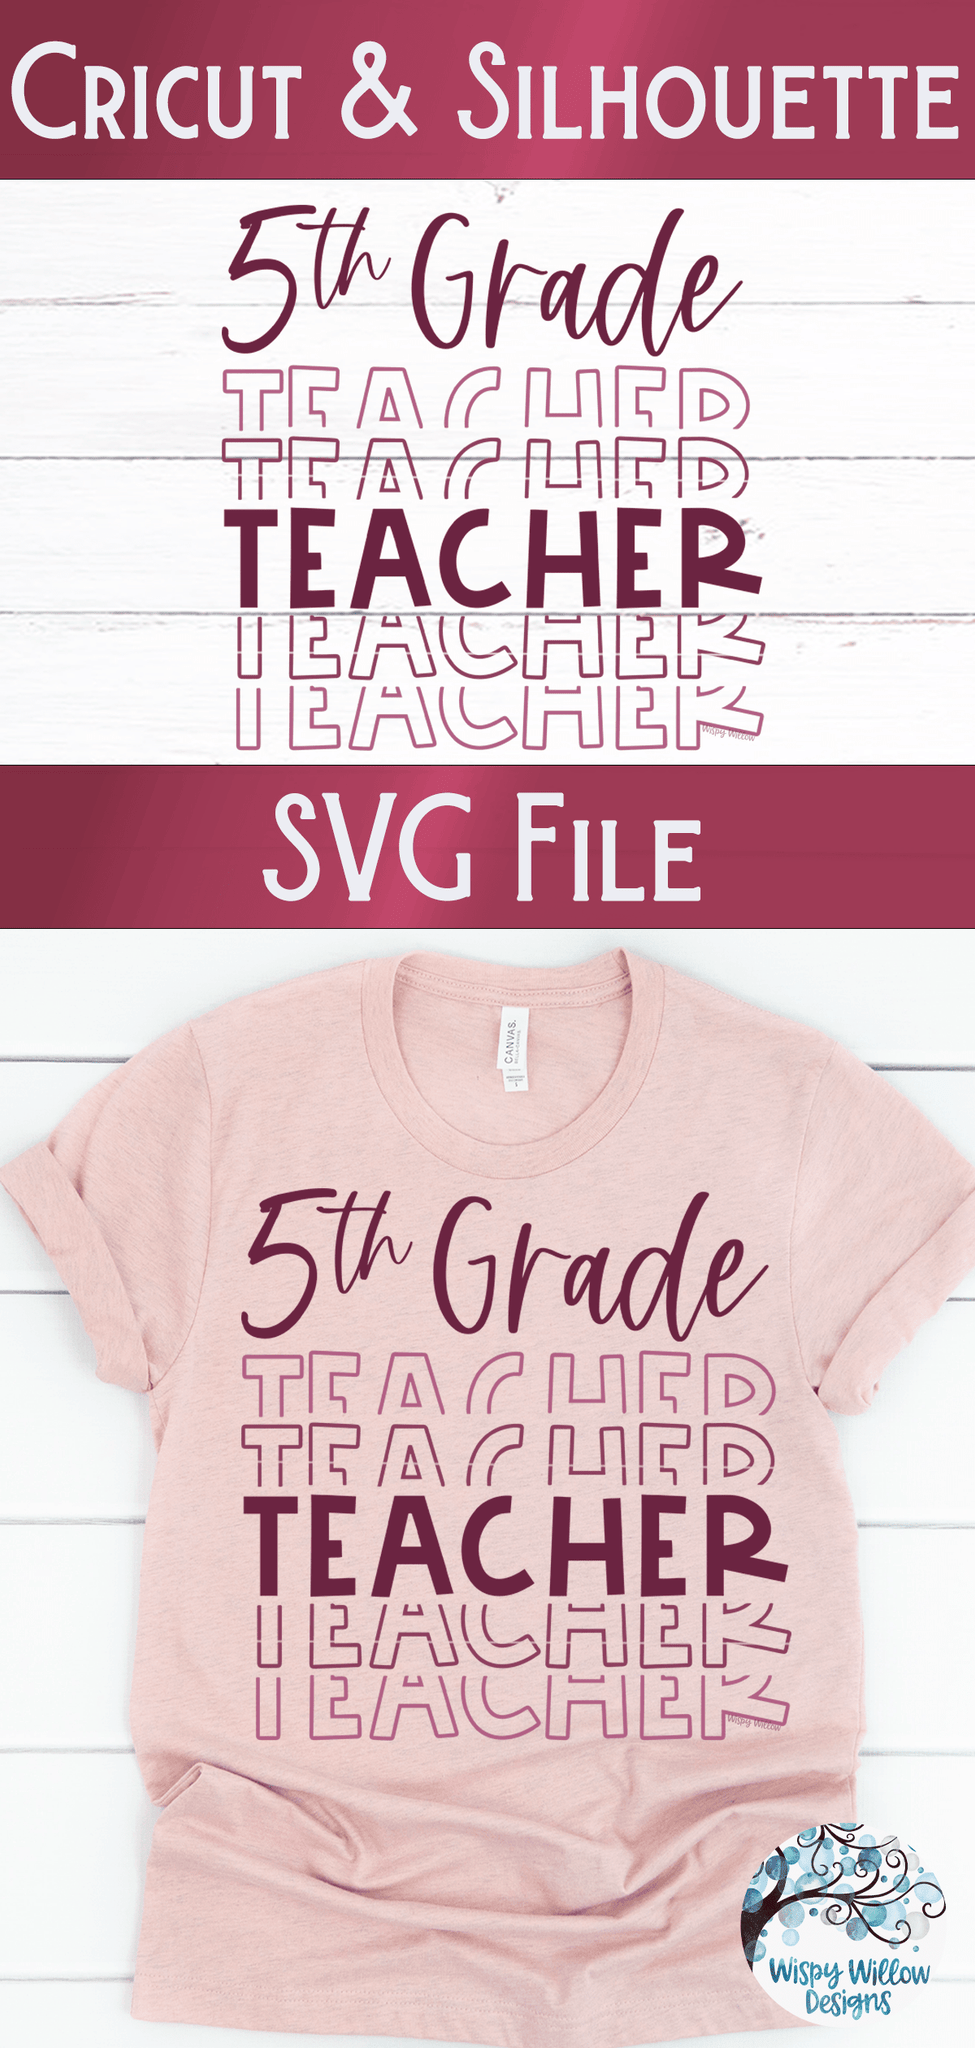 Fifth Grade Teacher SVG | Teacher Shirt SVG Wispy Willow Designs Company